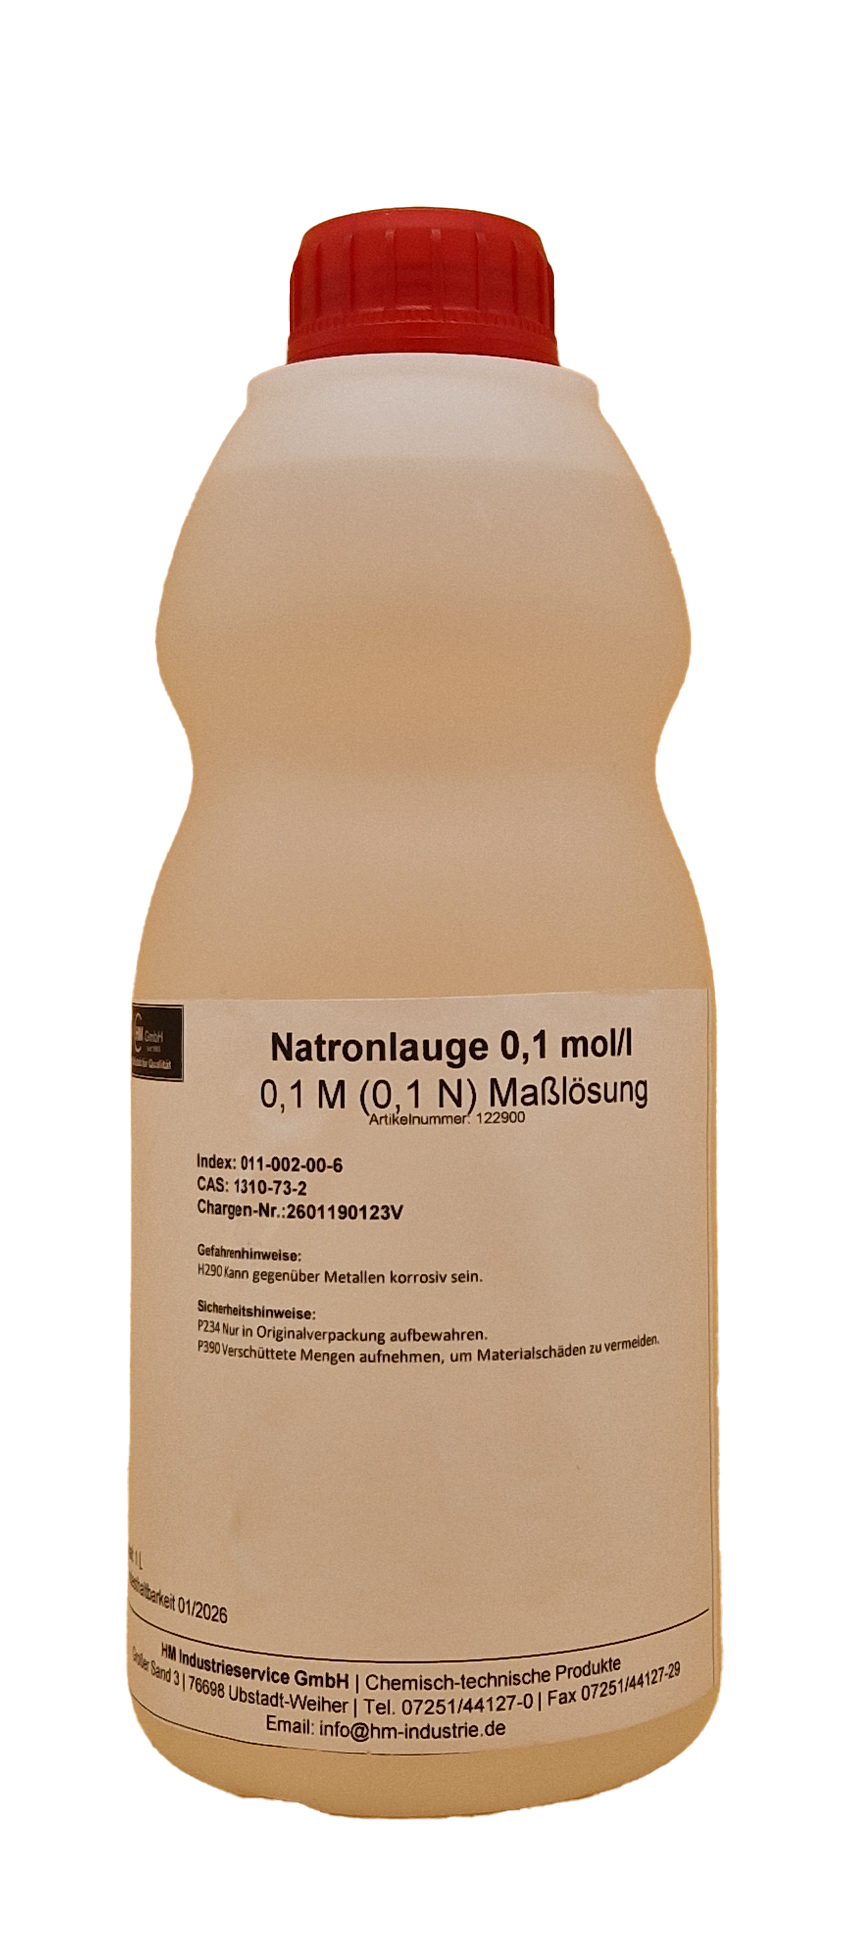 Natronlauge 0,1 mol/l (0,1N) Maßlösung